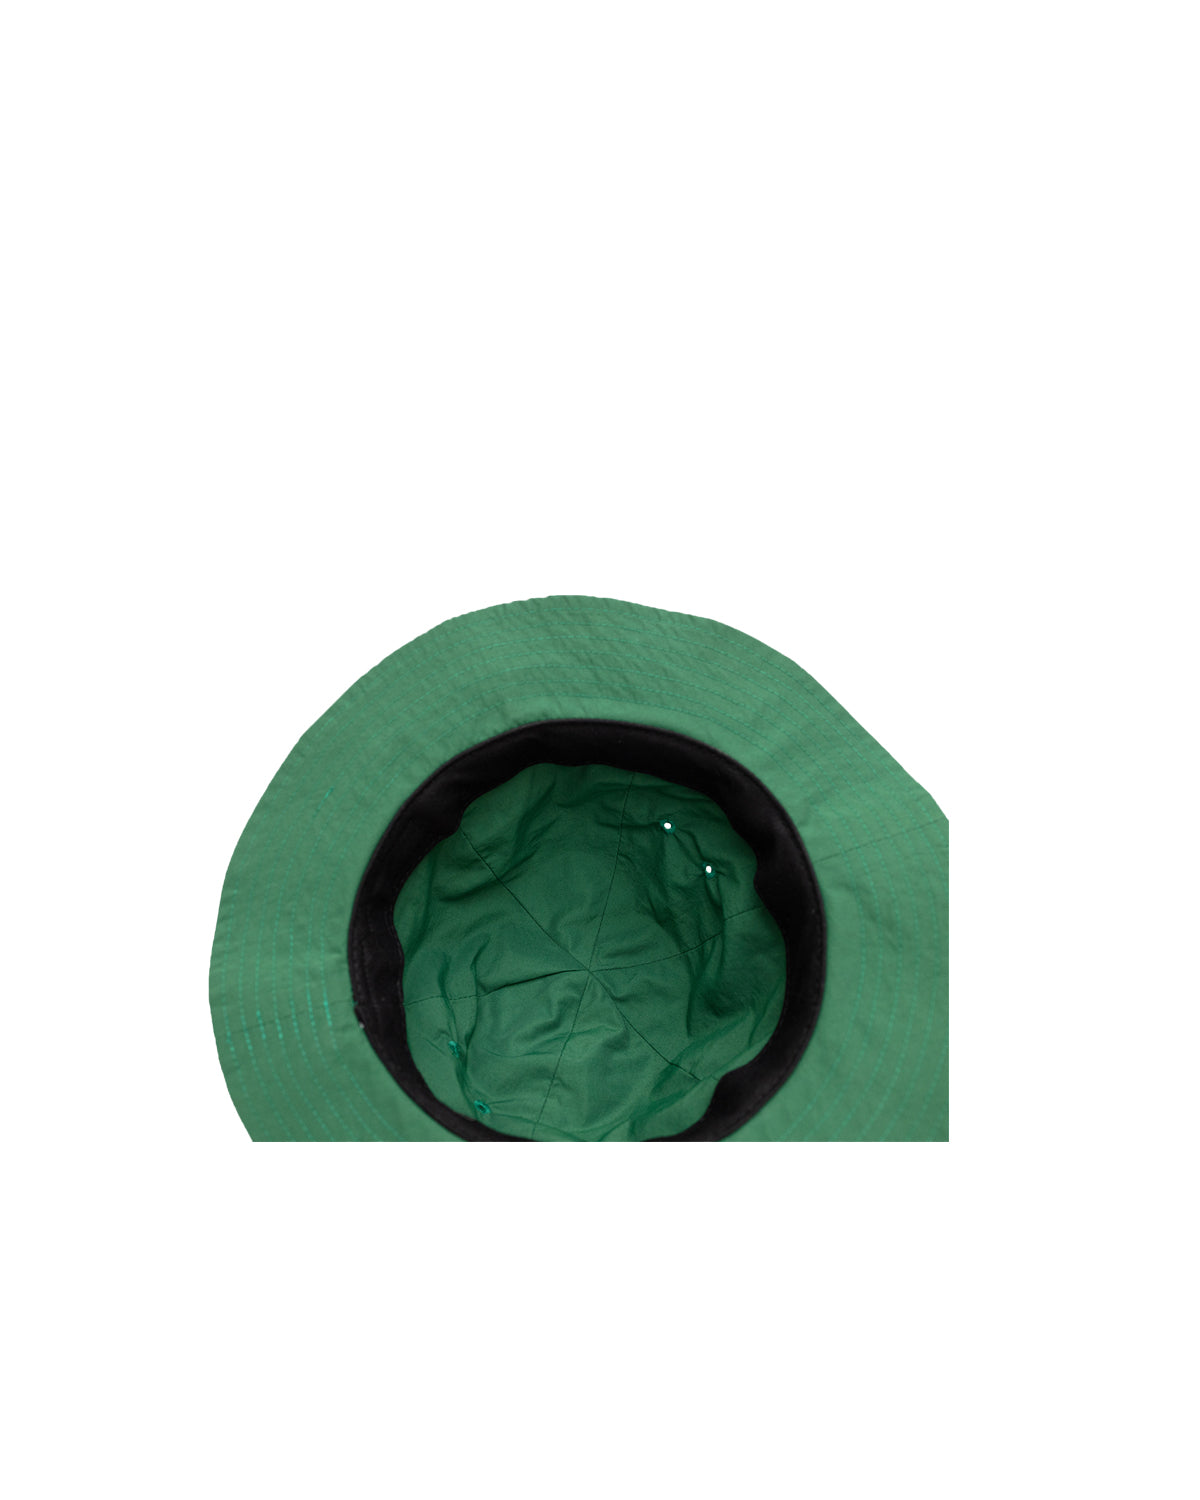 Bell Cap - Clover Green